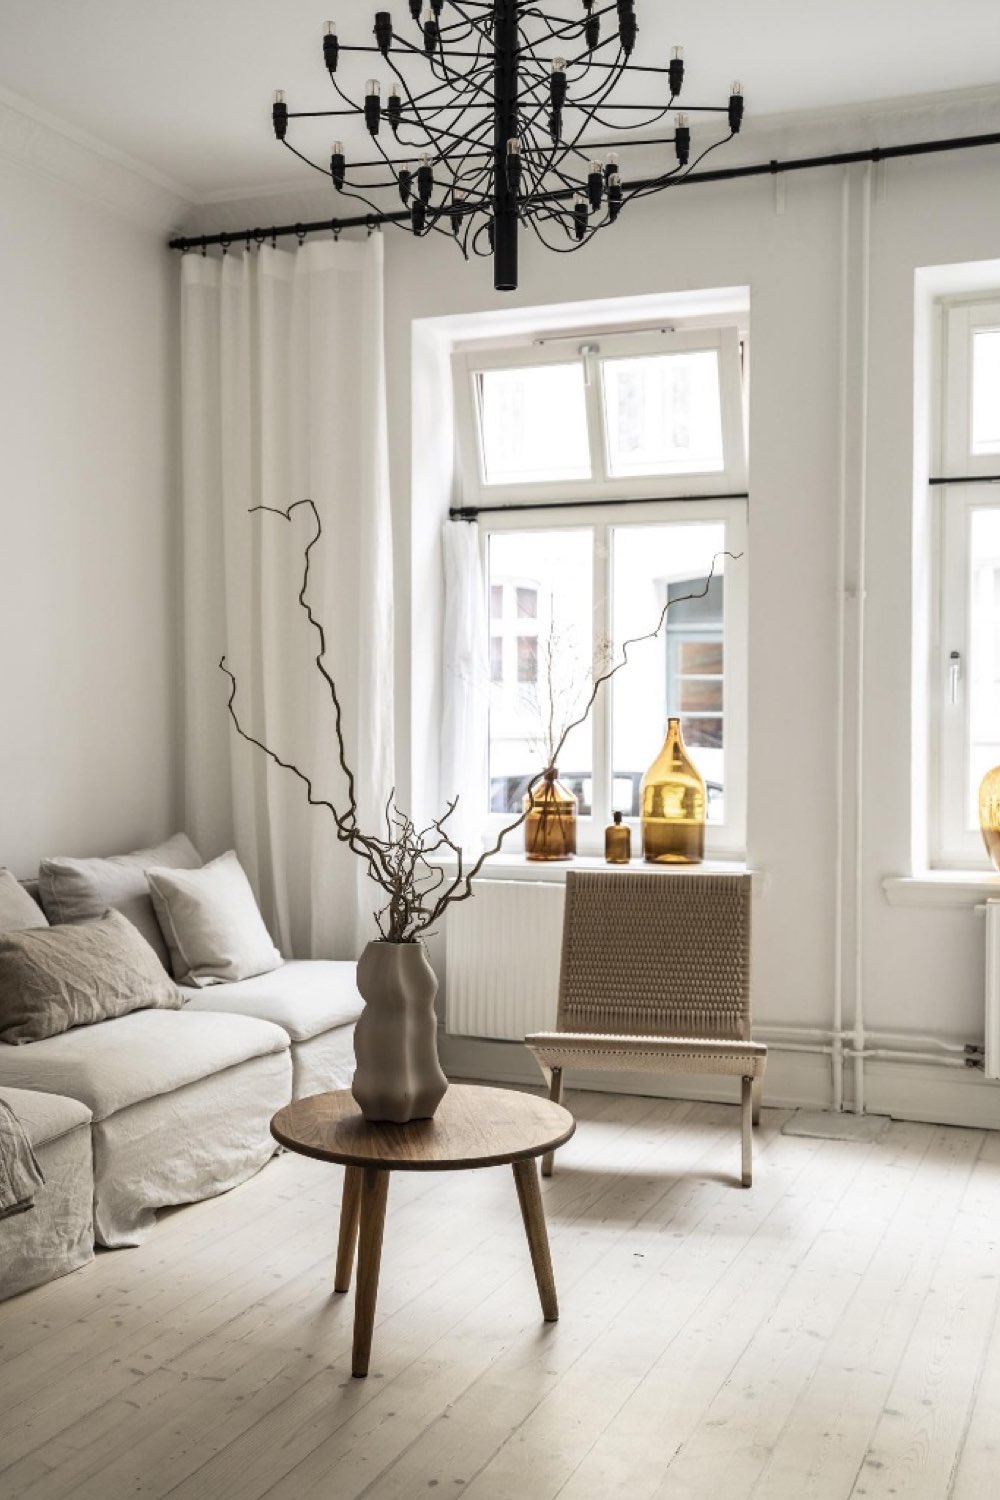 decor maison minimaliste et cosy simple épuré salon séjour canapé familial table basse ronde en bois grande fenêtre rideaux ton sur ton mur